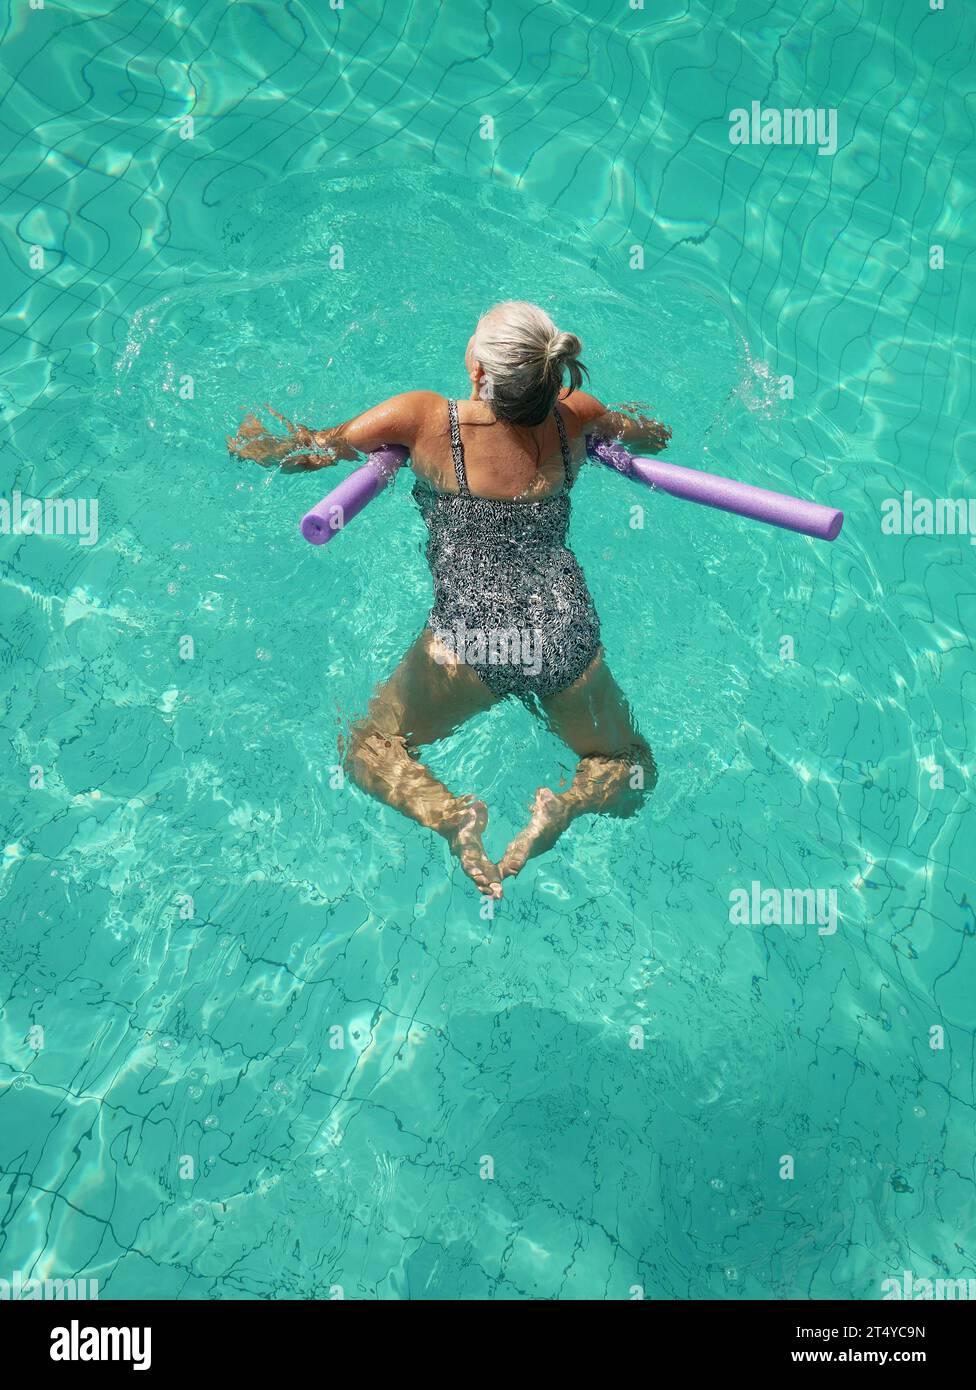 Vista dall'alto di una donna di 50 anni che nuota da sola in piscina in vacanza utilizzando un noodle bouyancy aid. Foto Stock